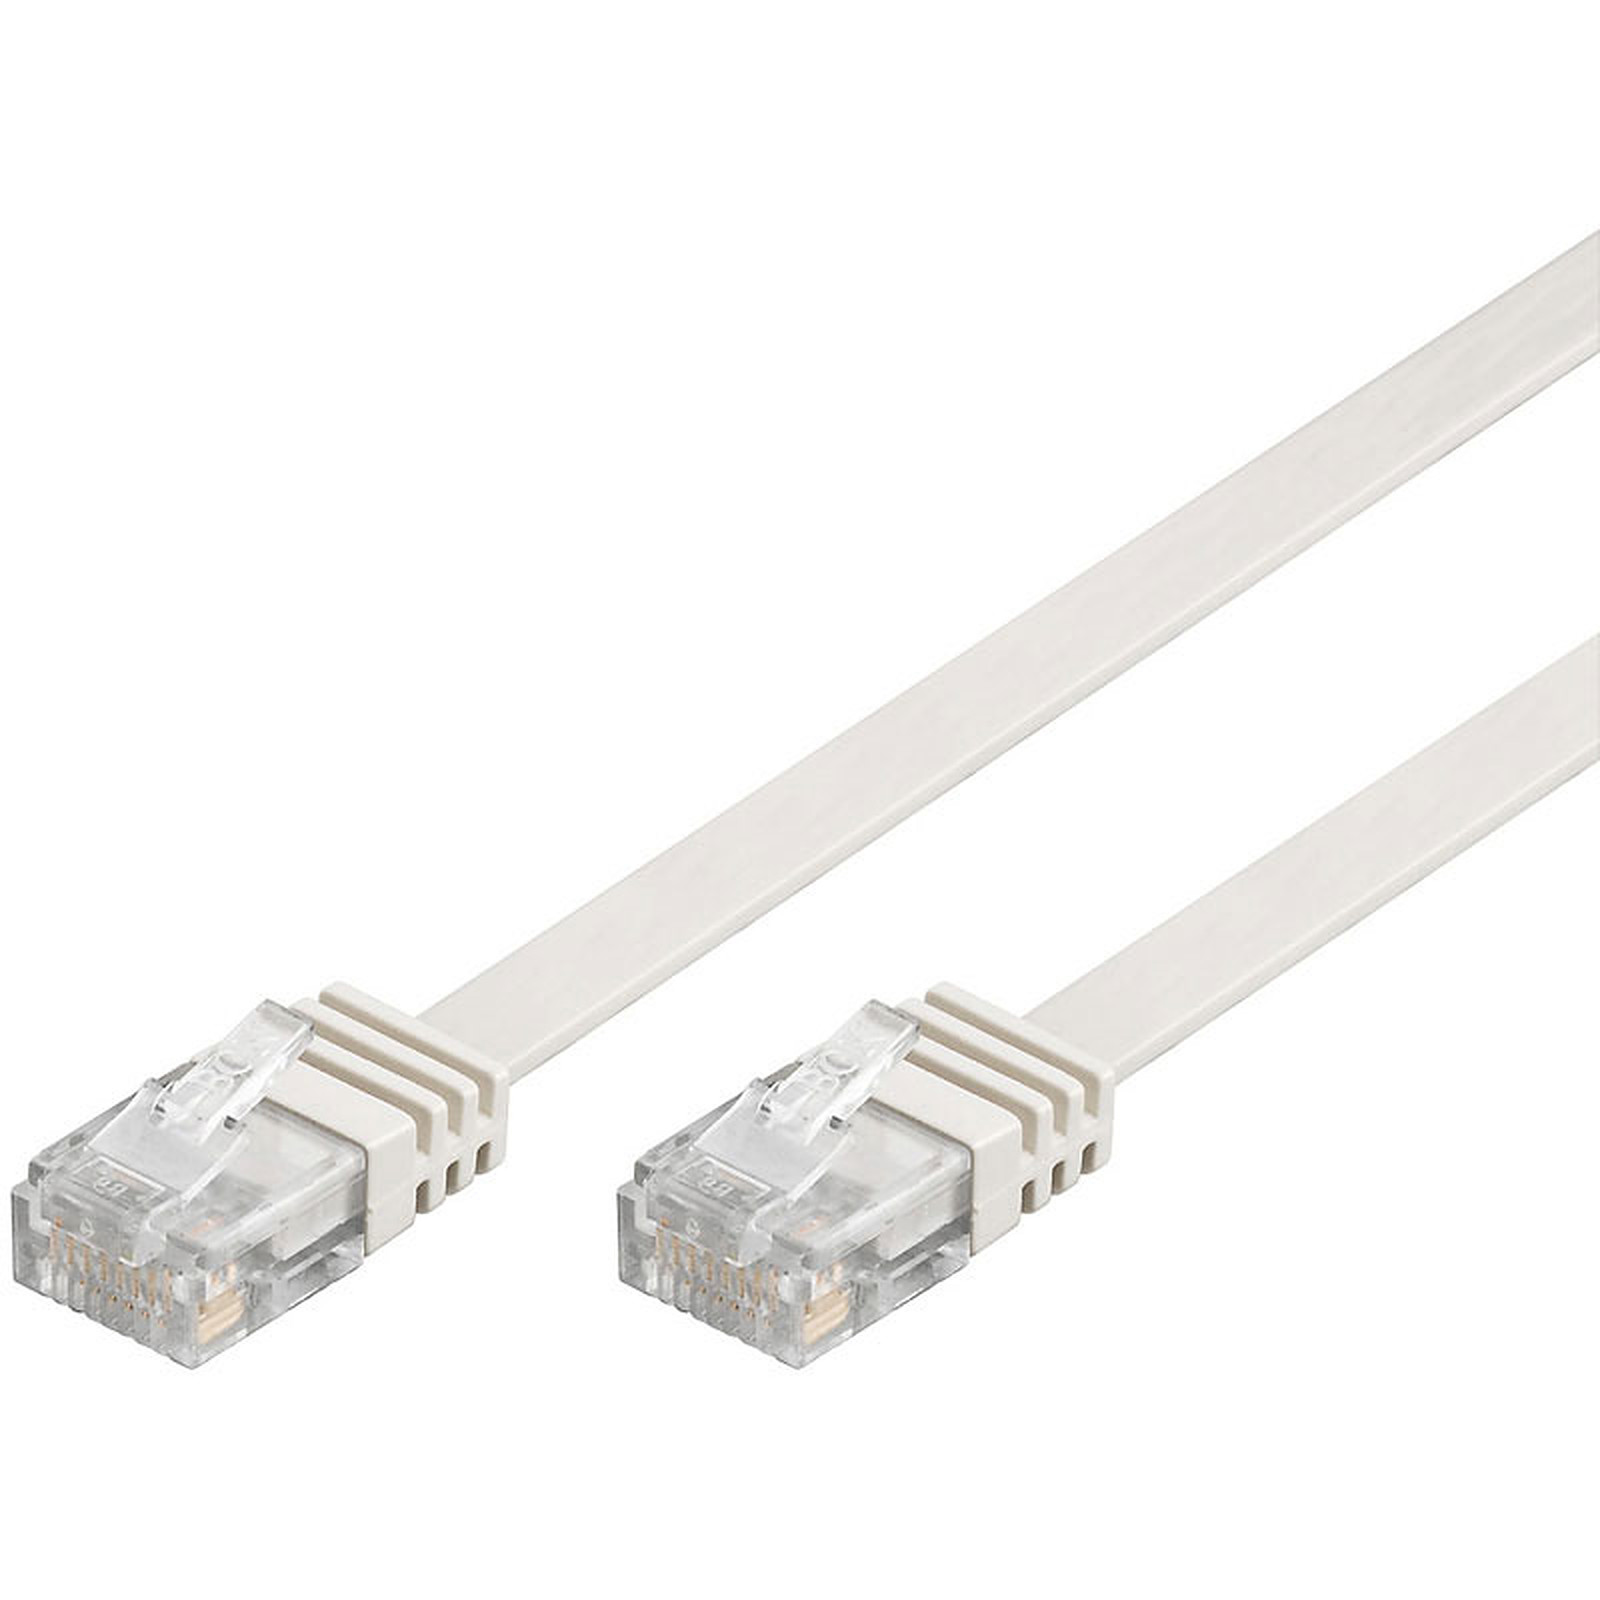 Cable RJ45 plat categorie 6 U/UTP 2 m (Blanc) - Cable RJ45 Generique